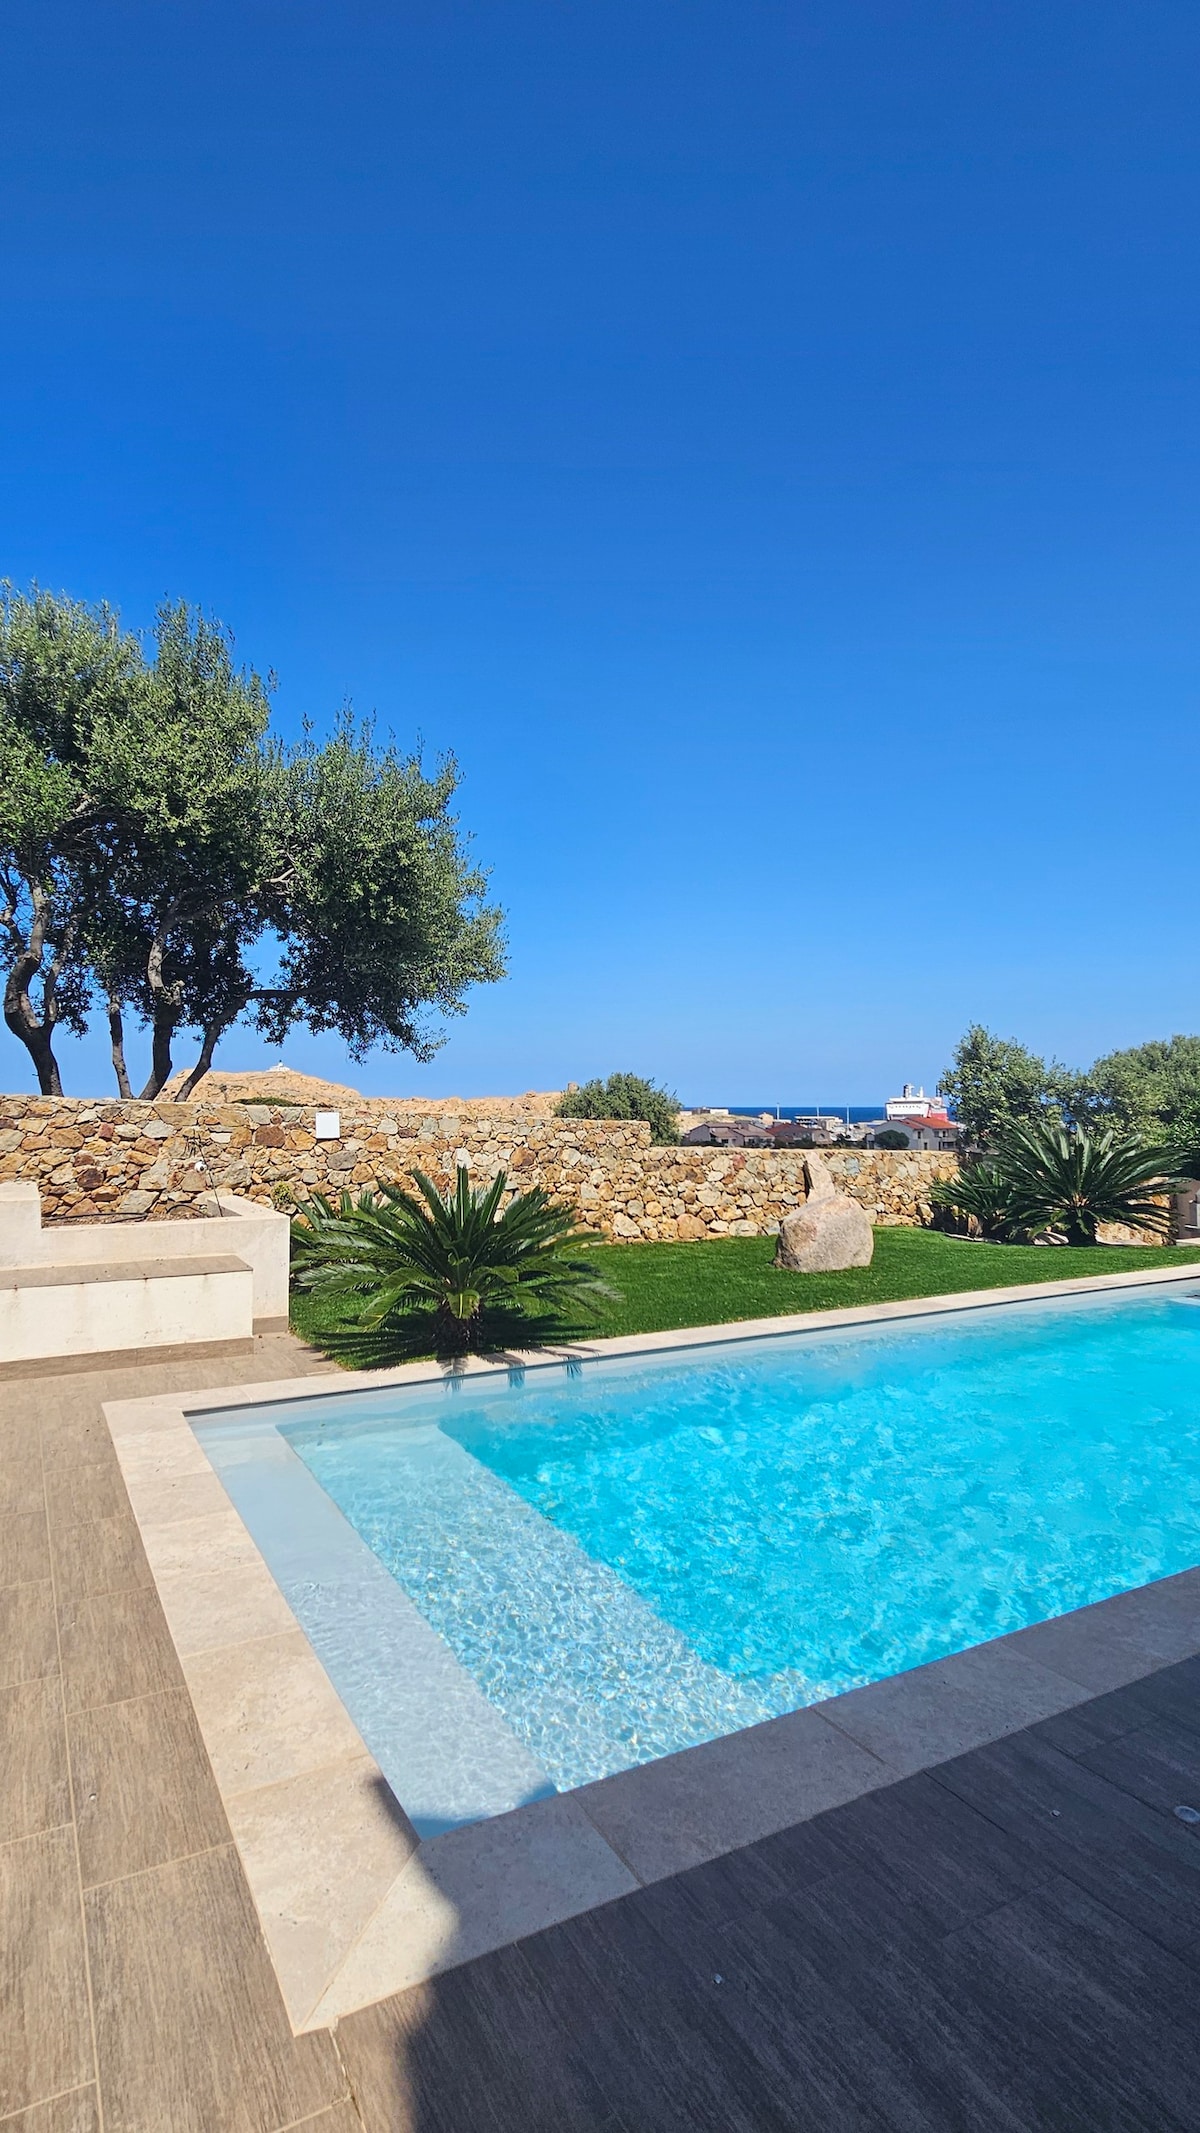 Villa avec piscine - Splendide vue mer - 8 pers.